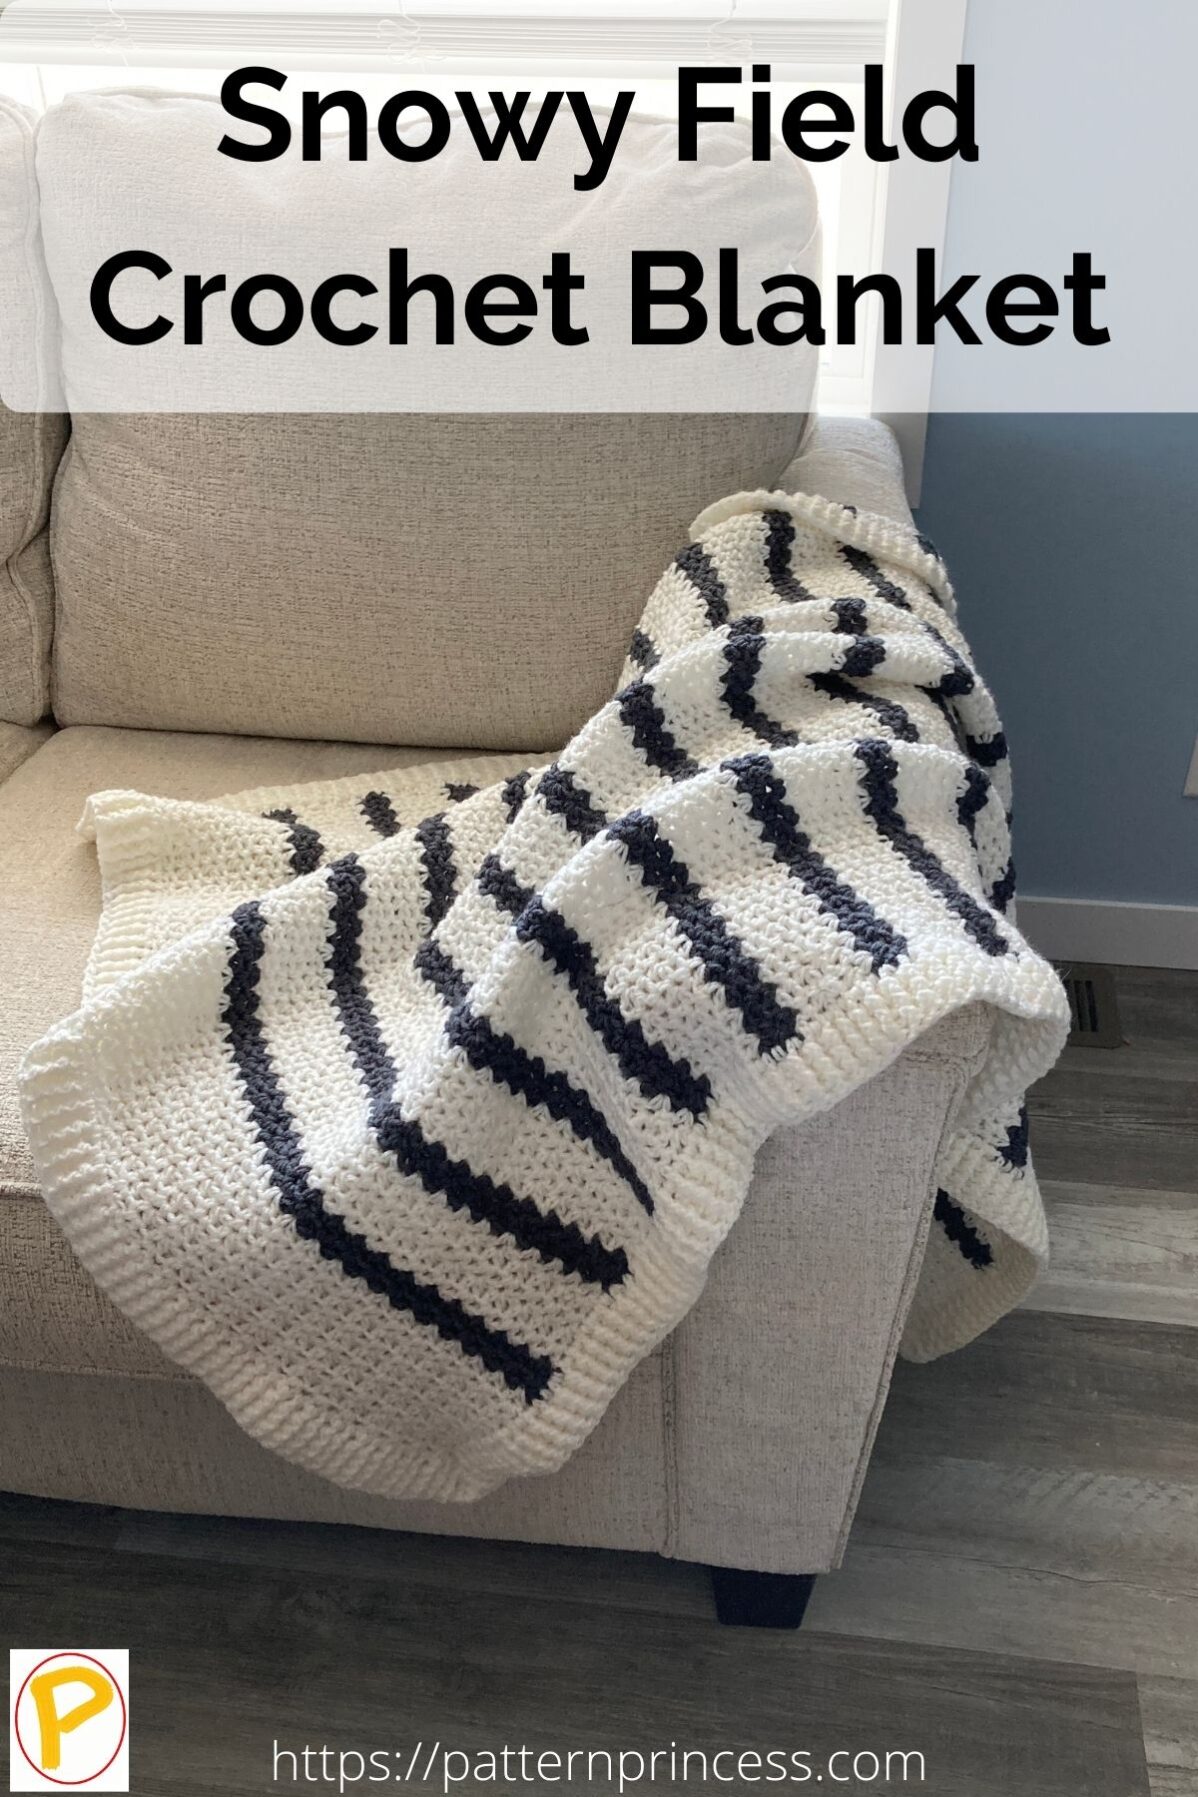 Snowy Field Crochet Blanket